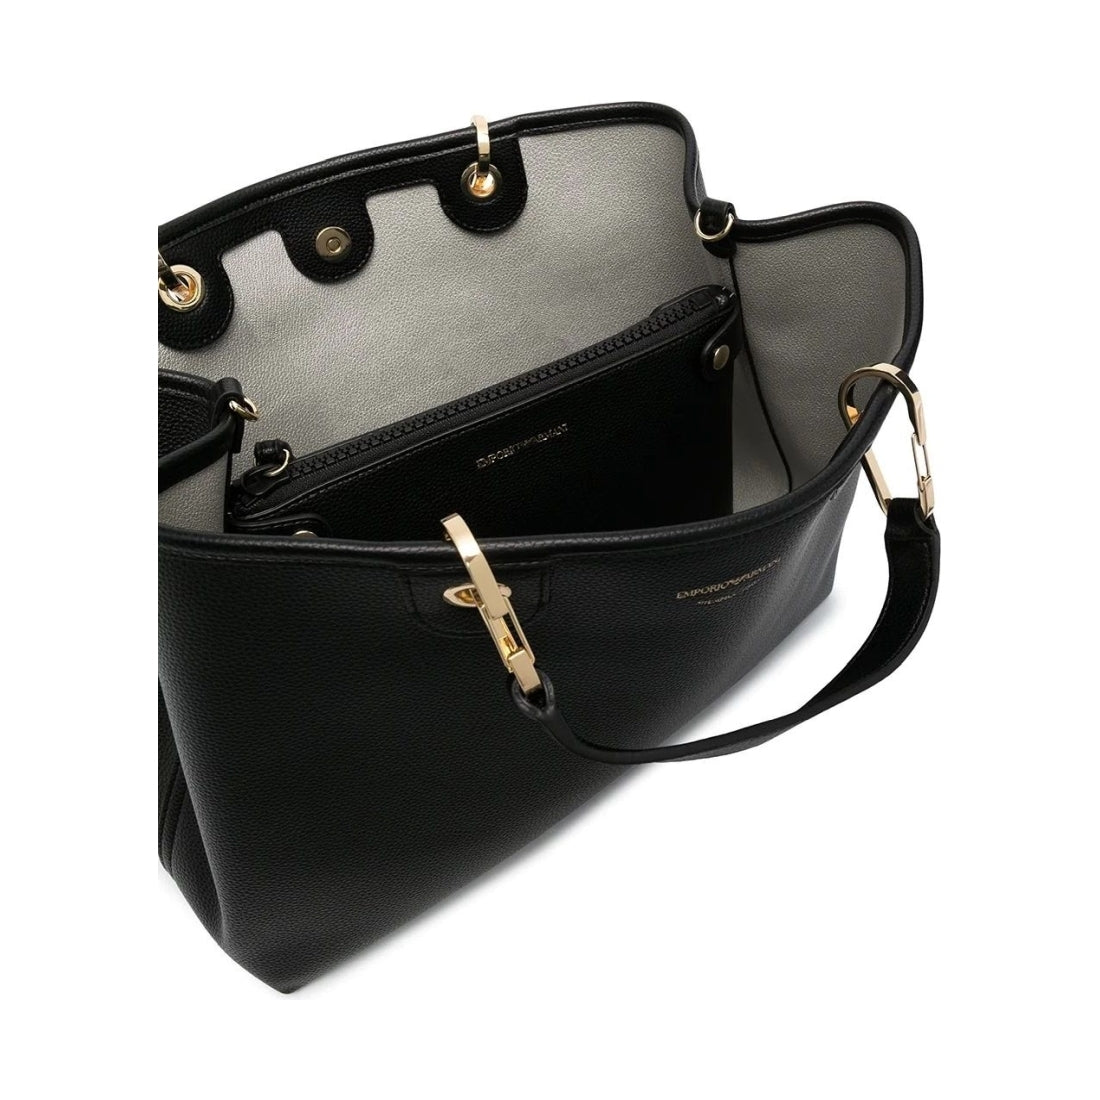 Emporio Armani womens nero, silver shopping bag | Vilbury London